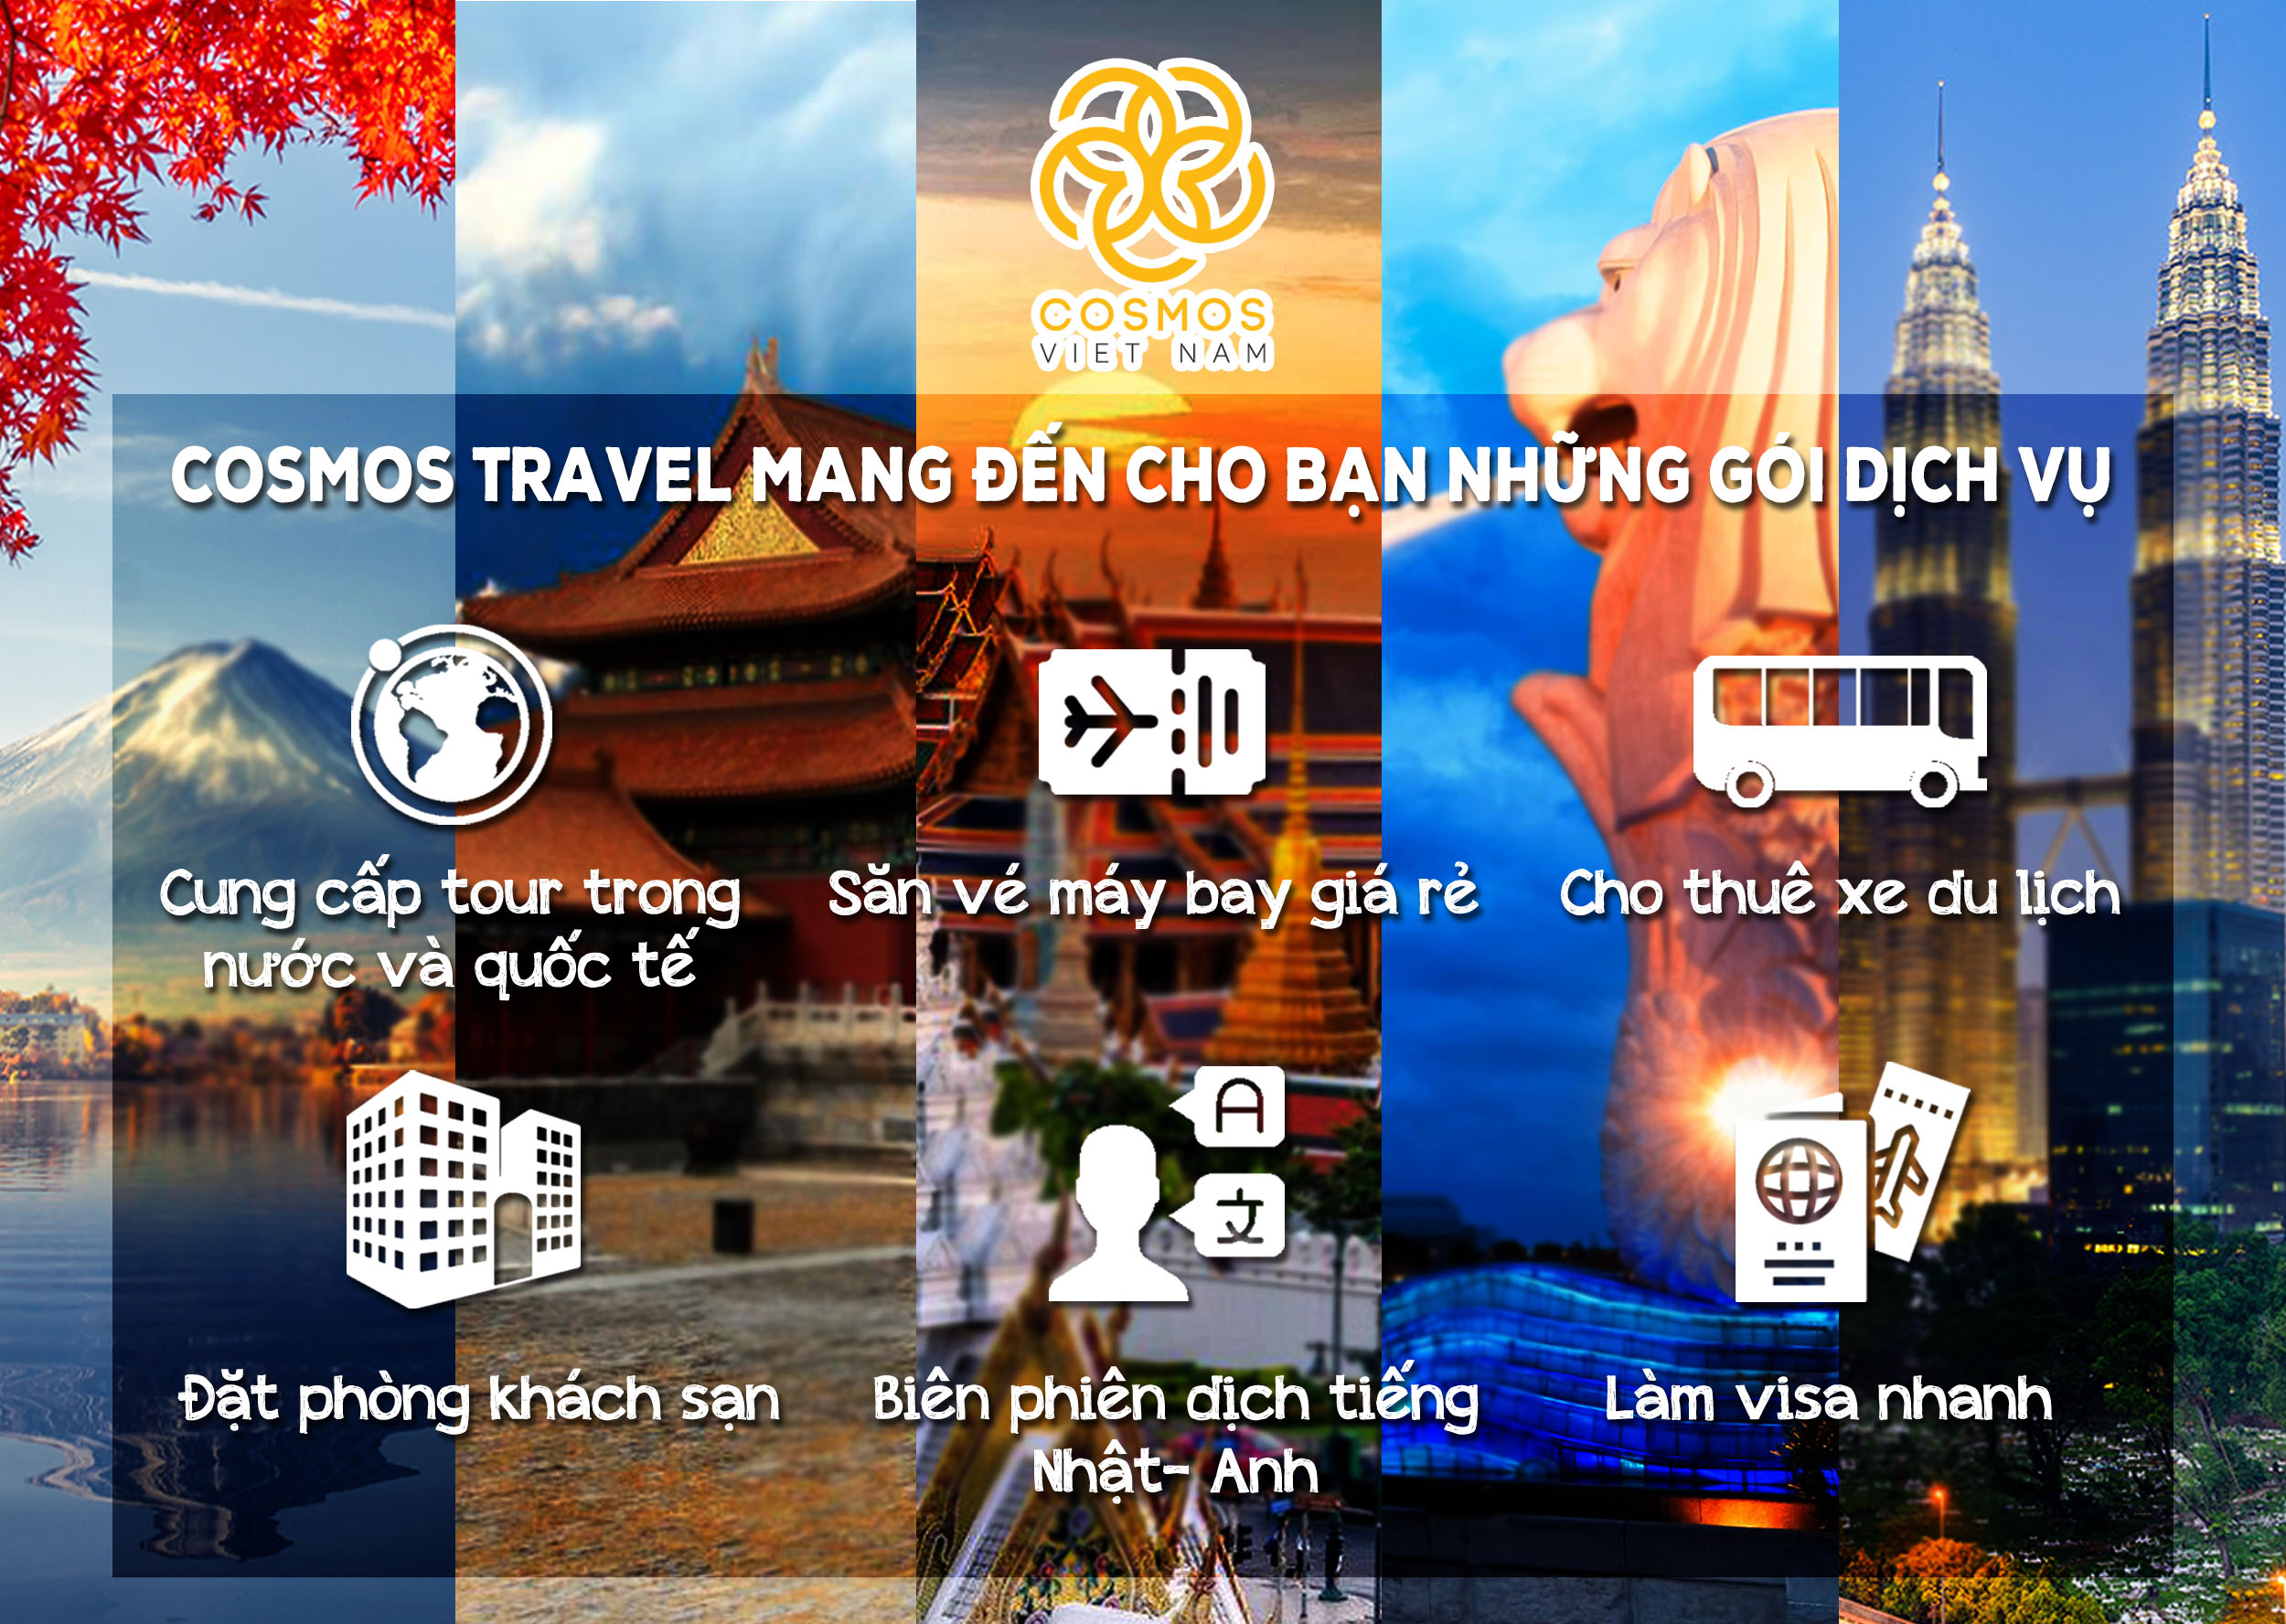 Cosmos Travel mang đến các dịch vụ du lịch chuyên nghiệp, giá thành hợp lý